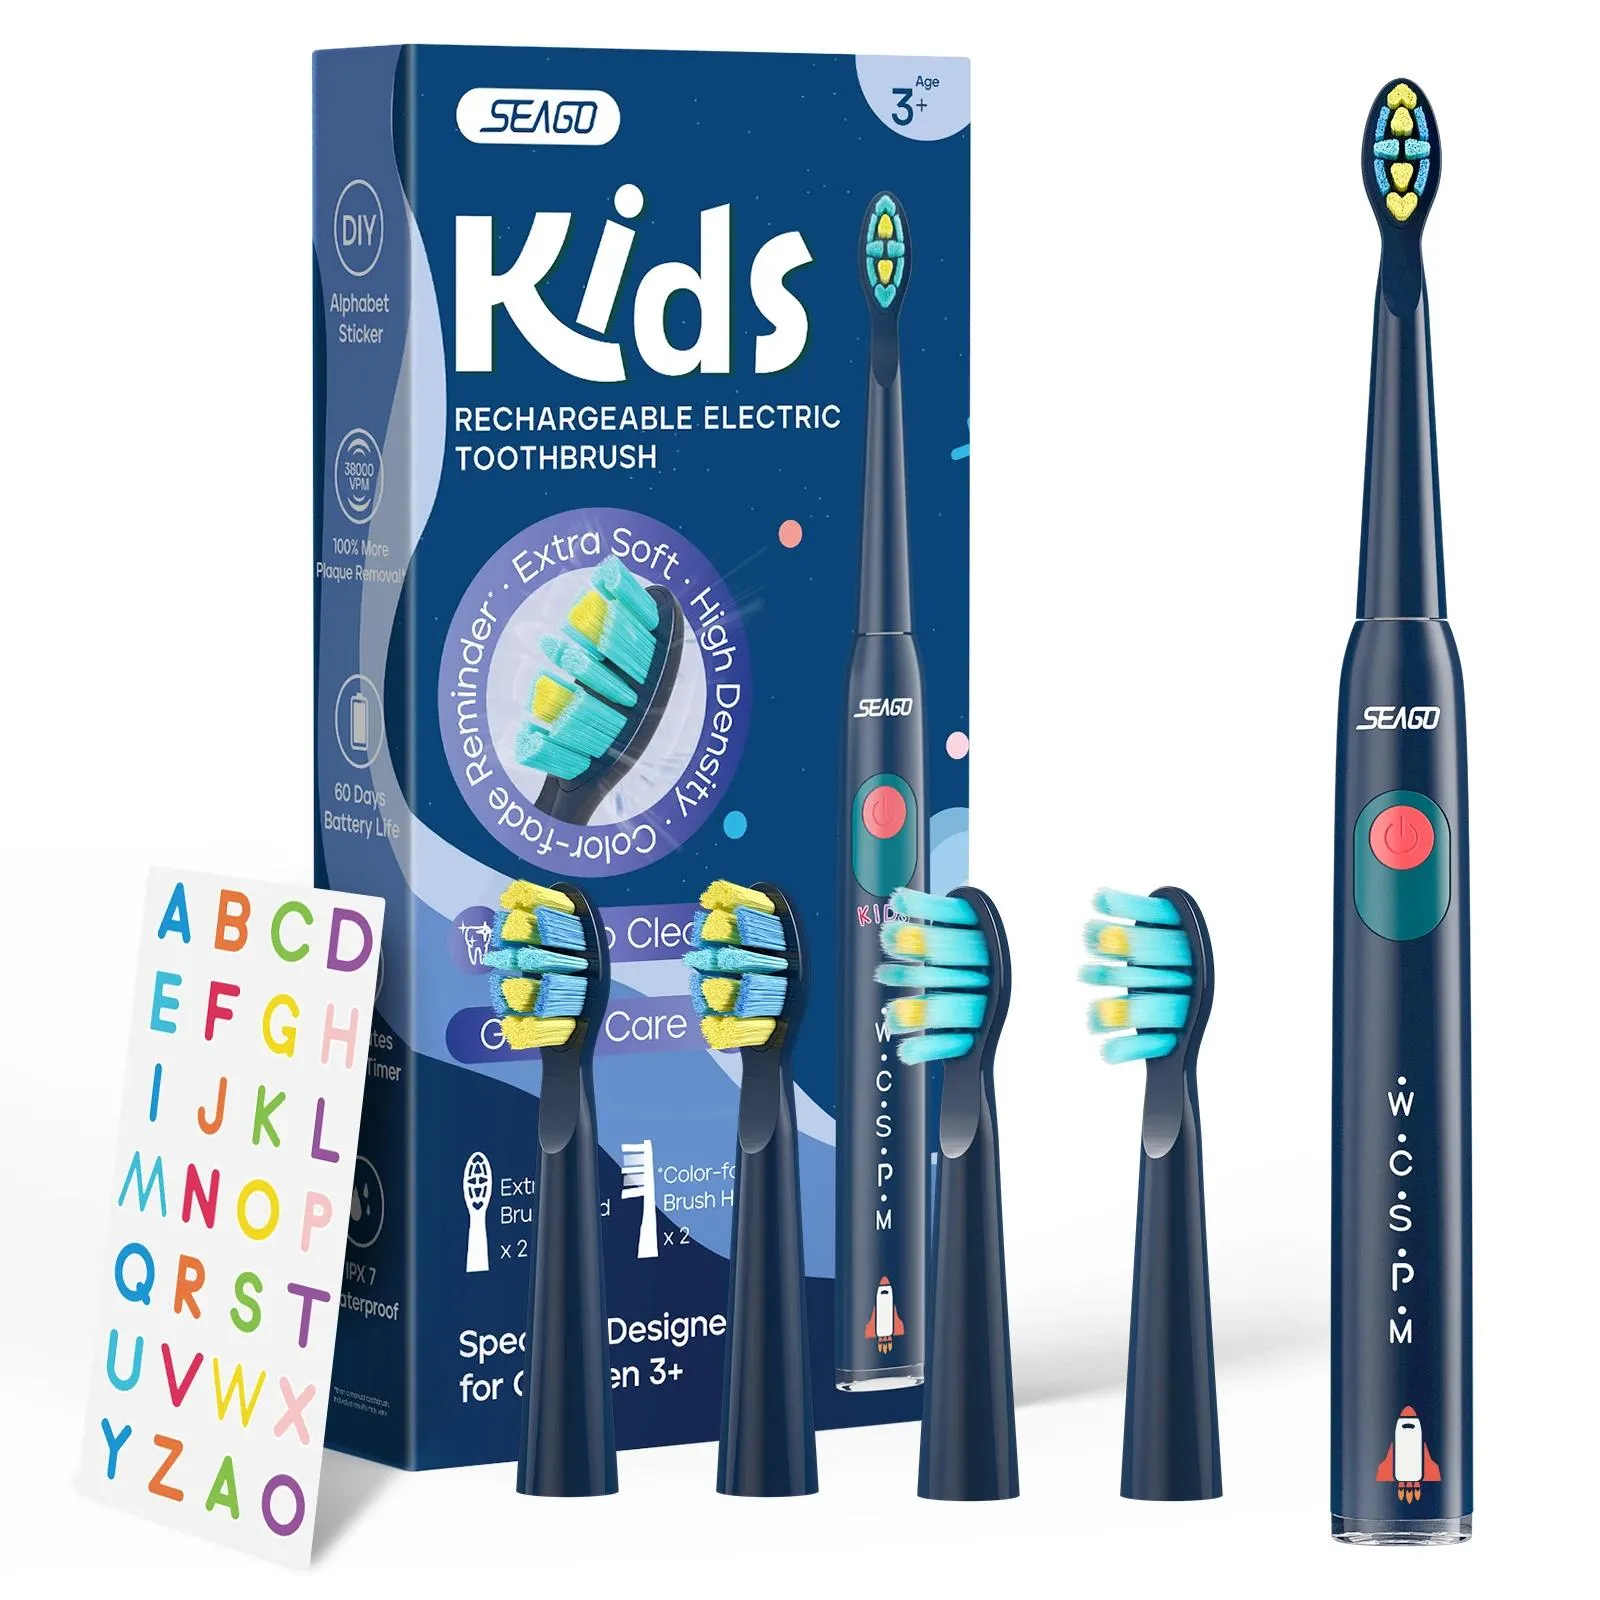 Brosse à dents SeaGo Kids Electric Brosse à dents pendant 6 + années 5 Modes RECHARAGE IPIX7 POWERSHER POWER SONIC BRUSHE DE TEMPLACE SG2303